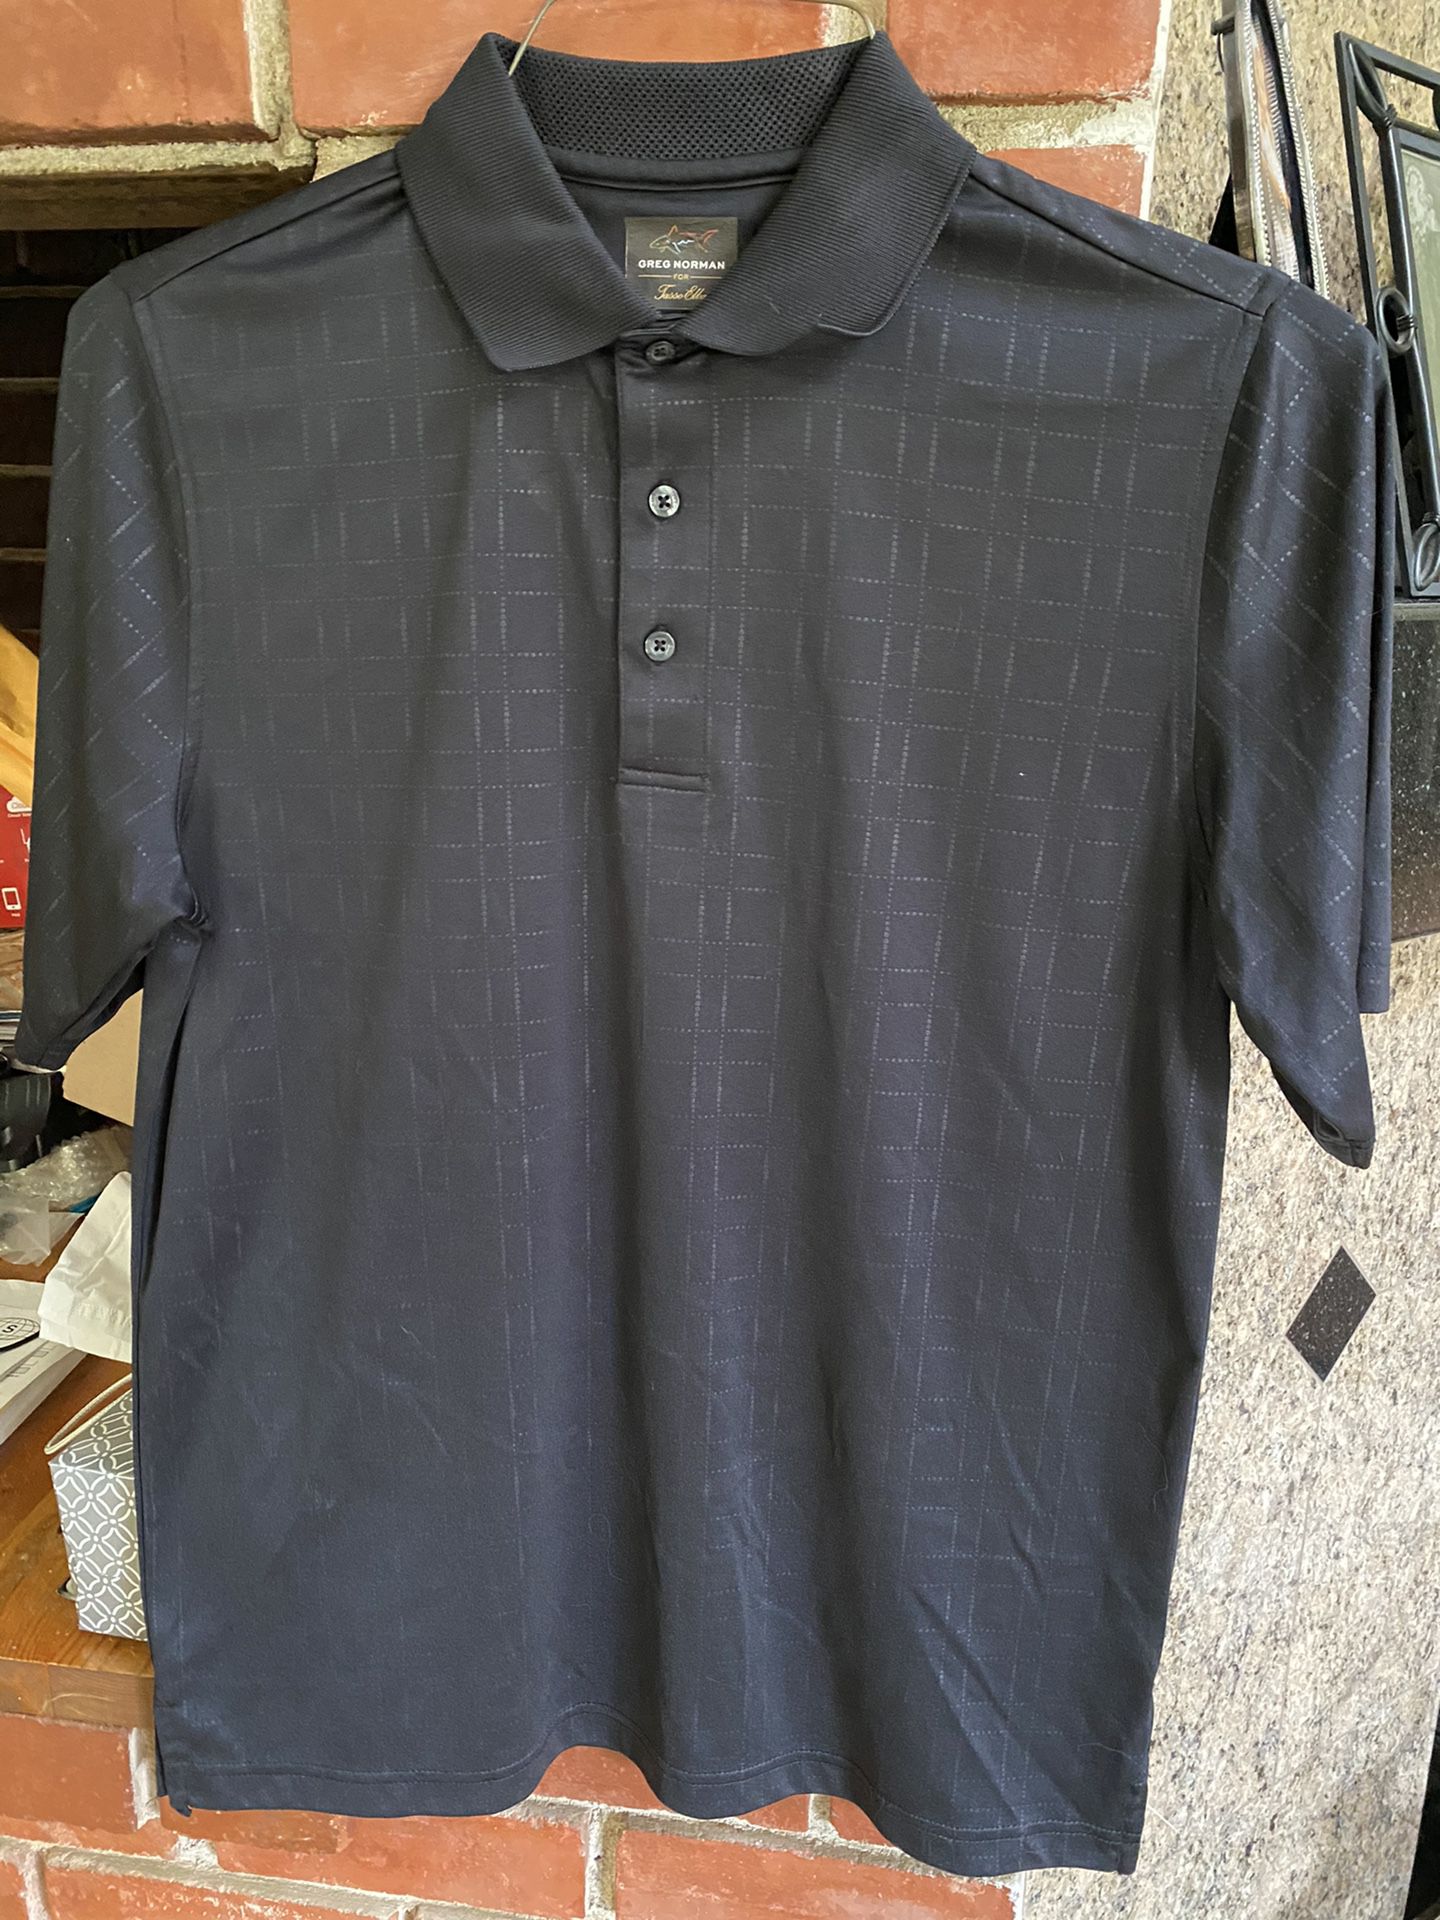 New Men’s Greg Norman Golf Shirt Size Small